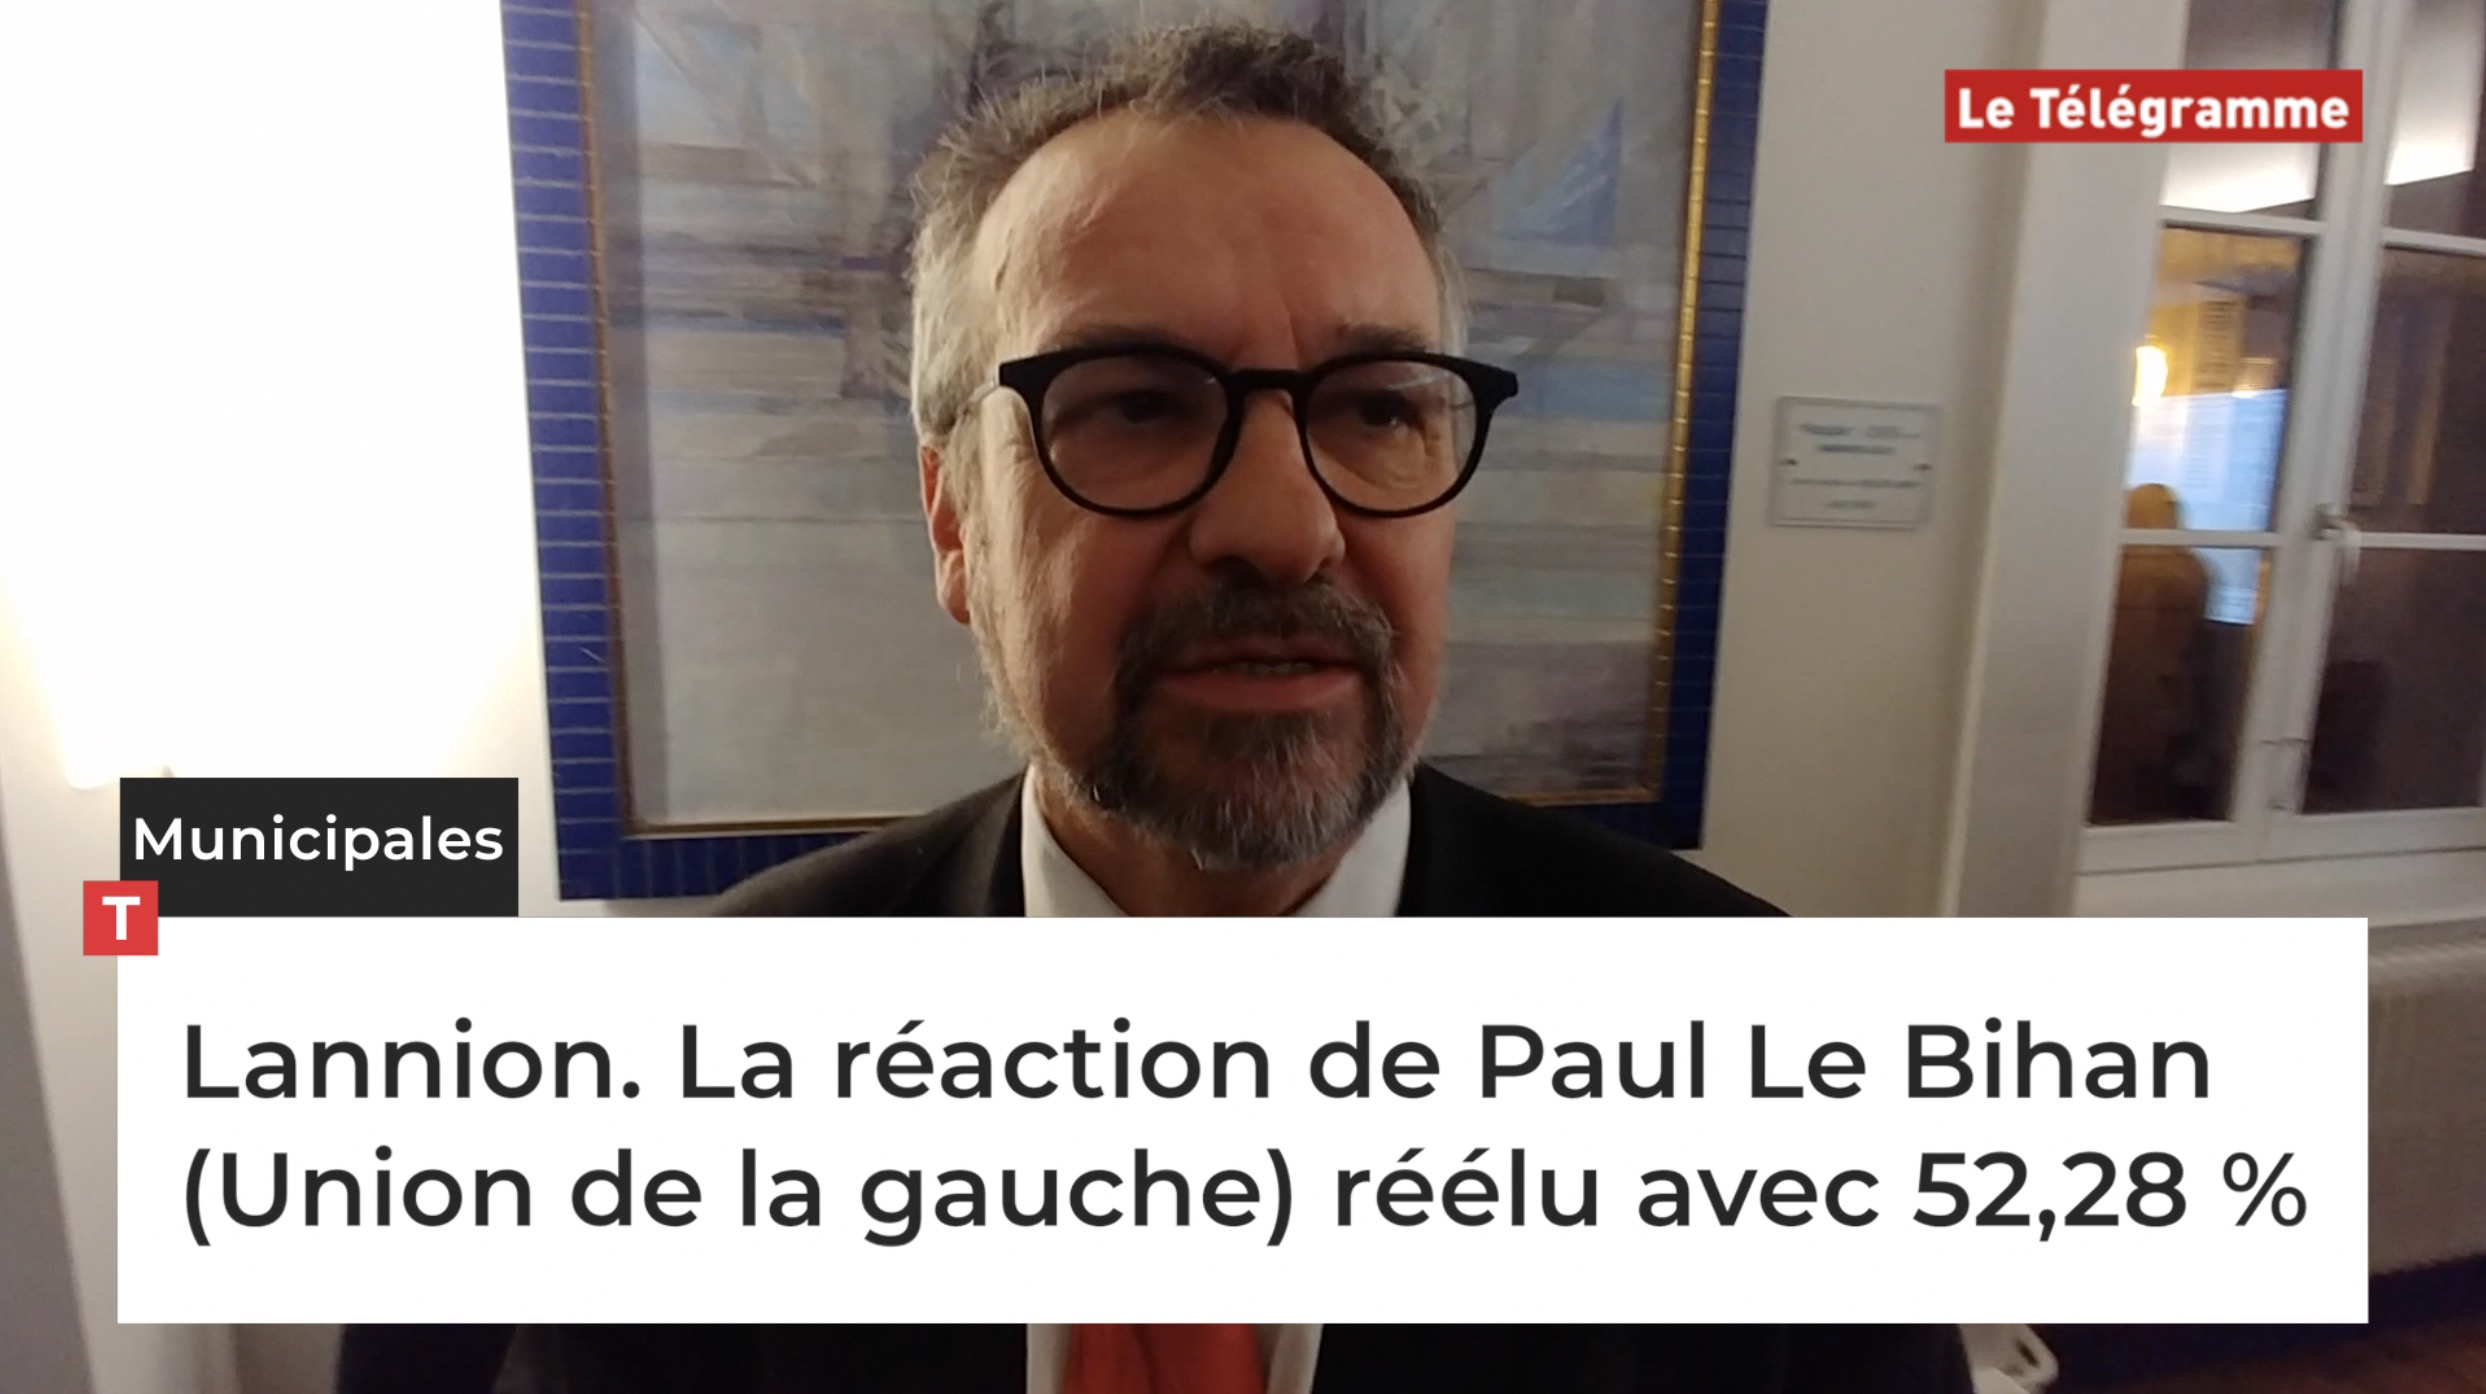 Lannion. La réaction de Paul Le Bihan (Union de la gauche) réélu avec 52,28 % (Le Télégramme)